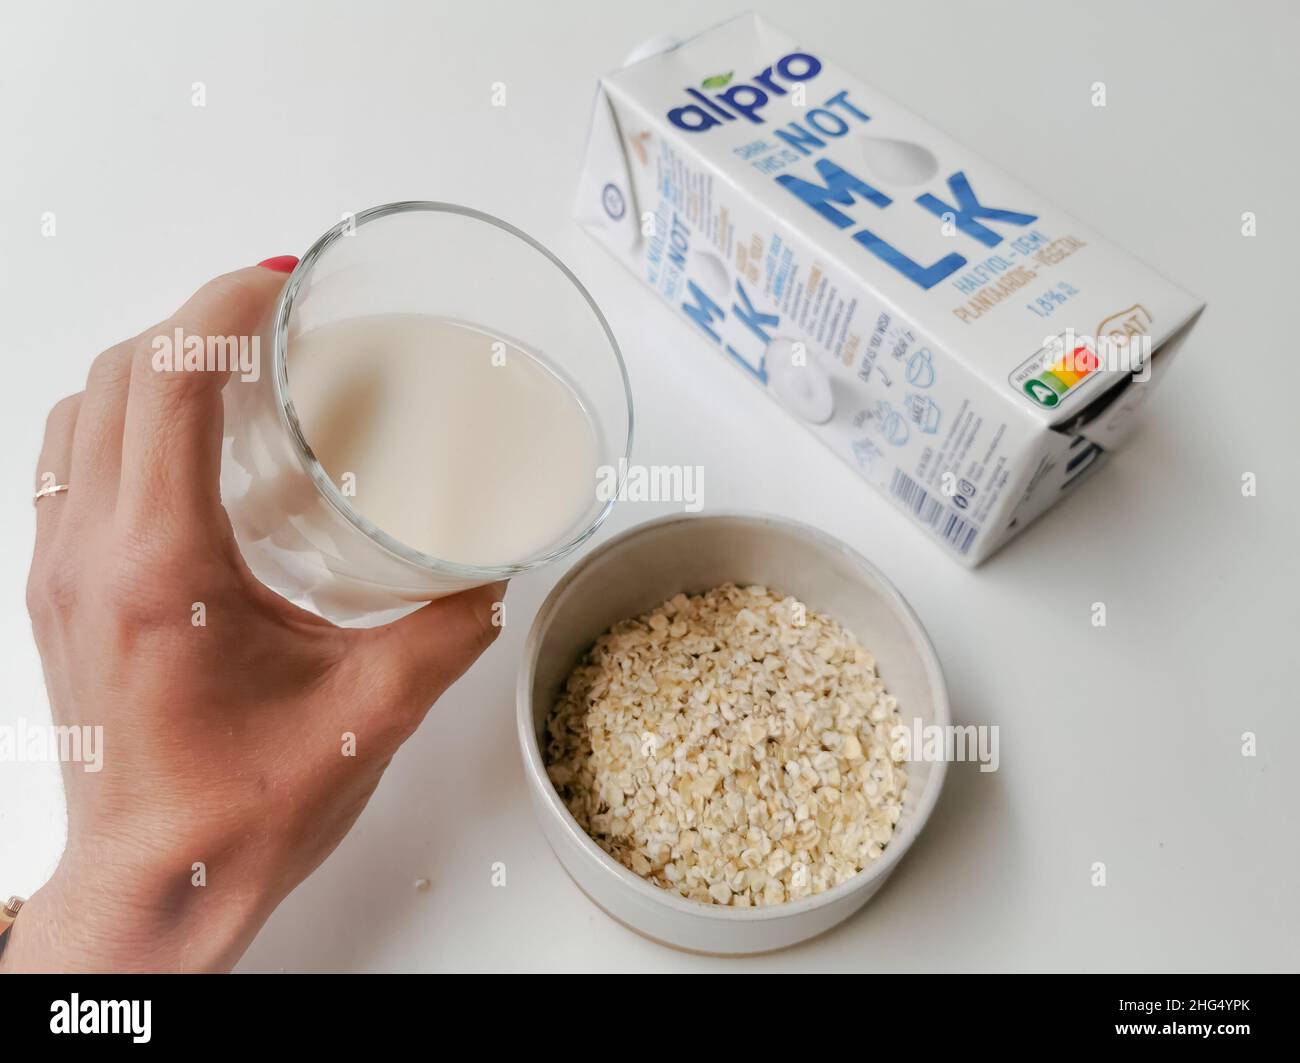 Belgique - janvier 2022: Carton de lait alternatif Alpro non MLK à base végétale fabriqué à partir d'avoine.Concept de boisson à base d'usine Banque D'Images